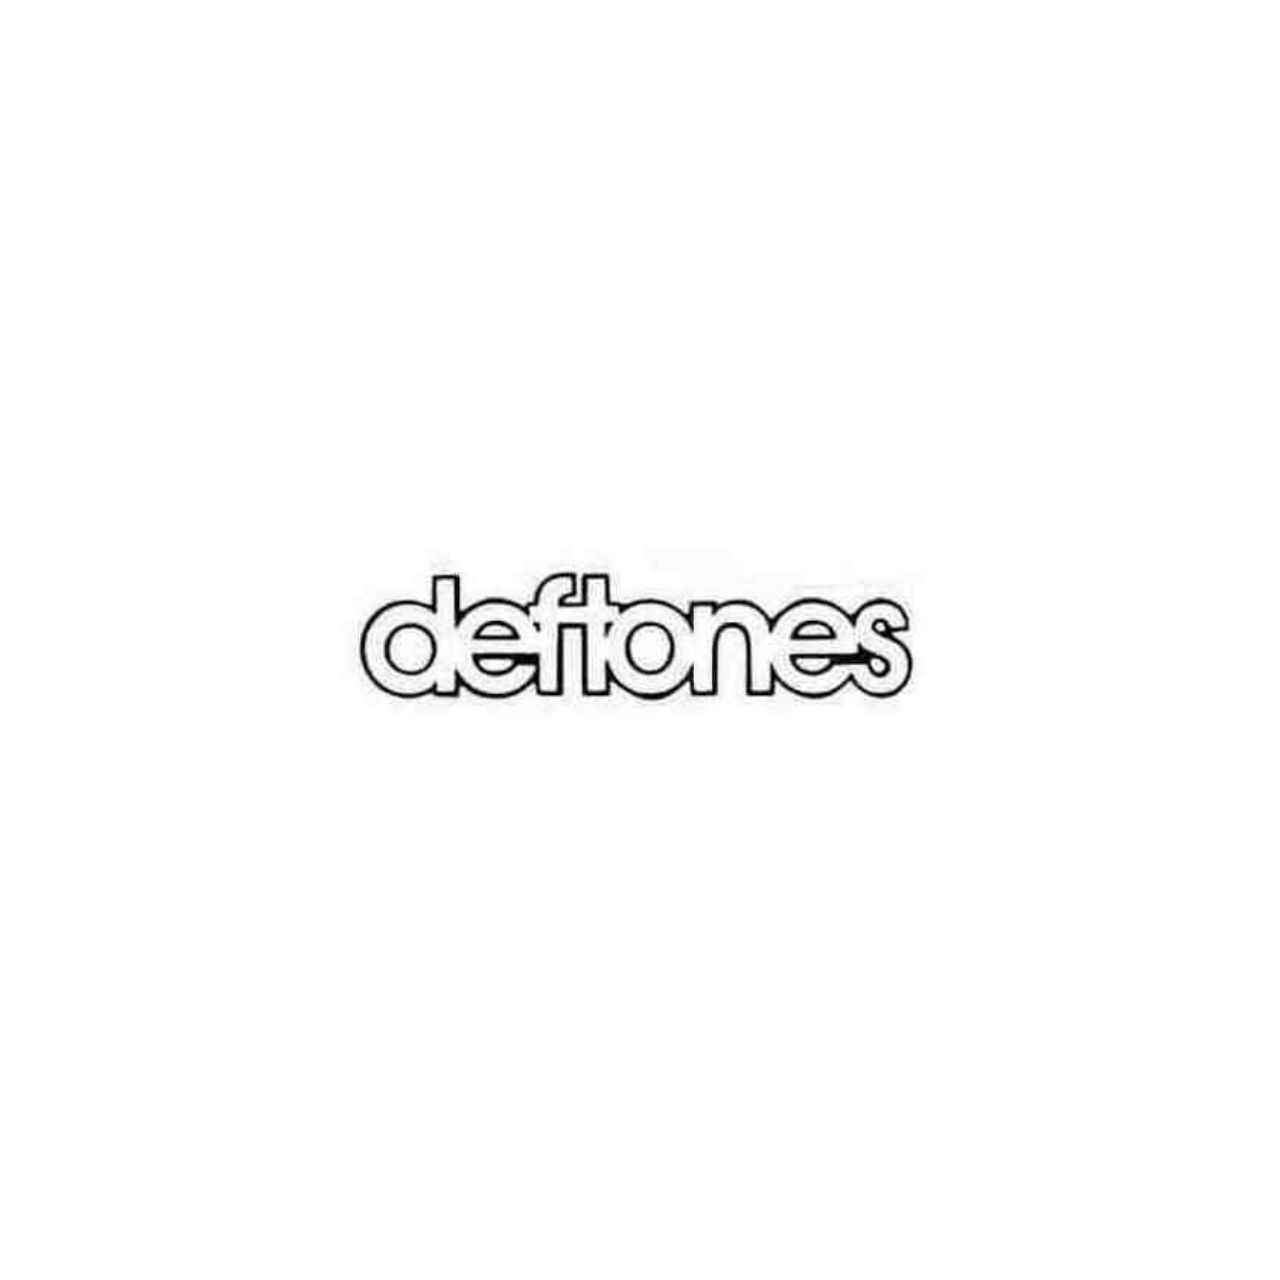 Deftones Logo - Deftones Logo Decal Sticker